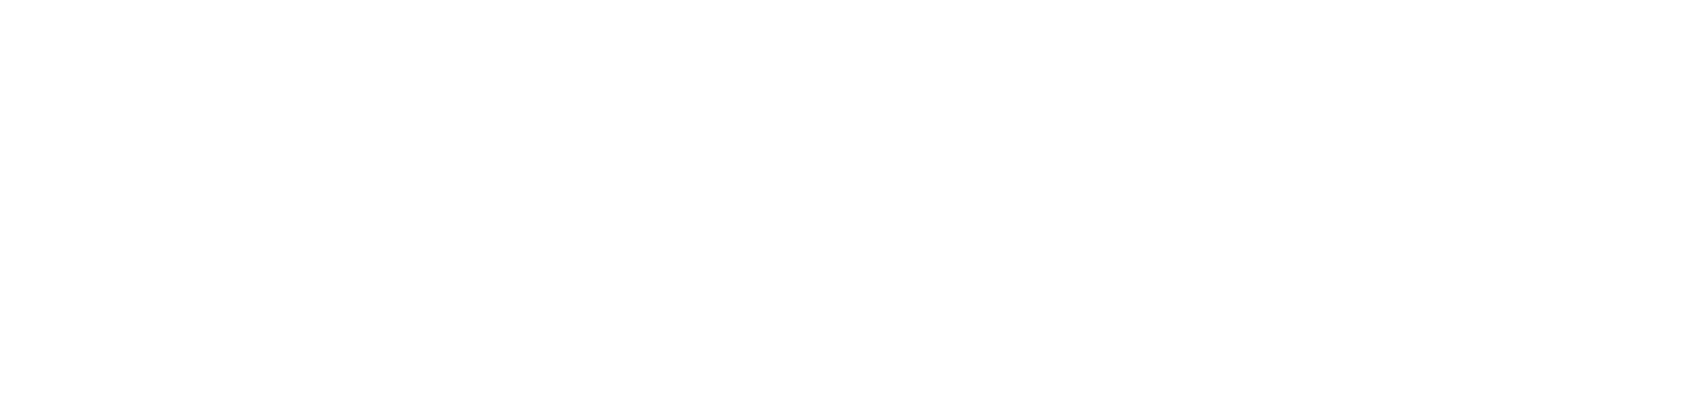 Asker Healthcare Group - Nalka